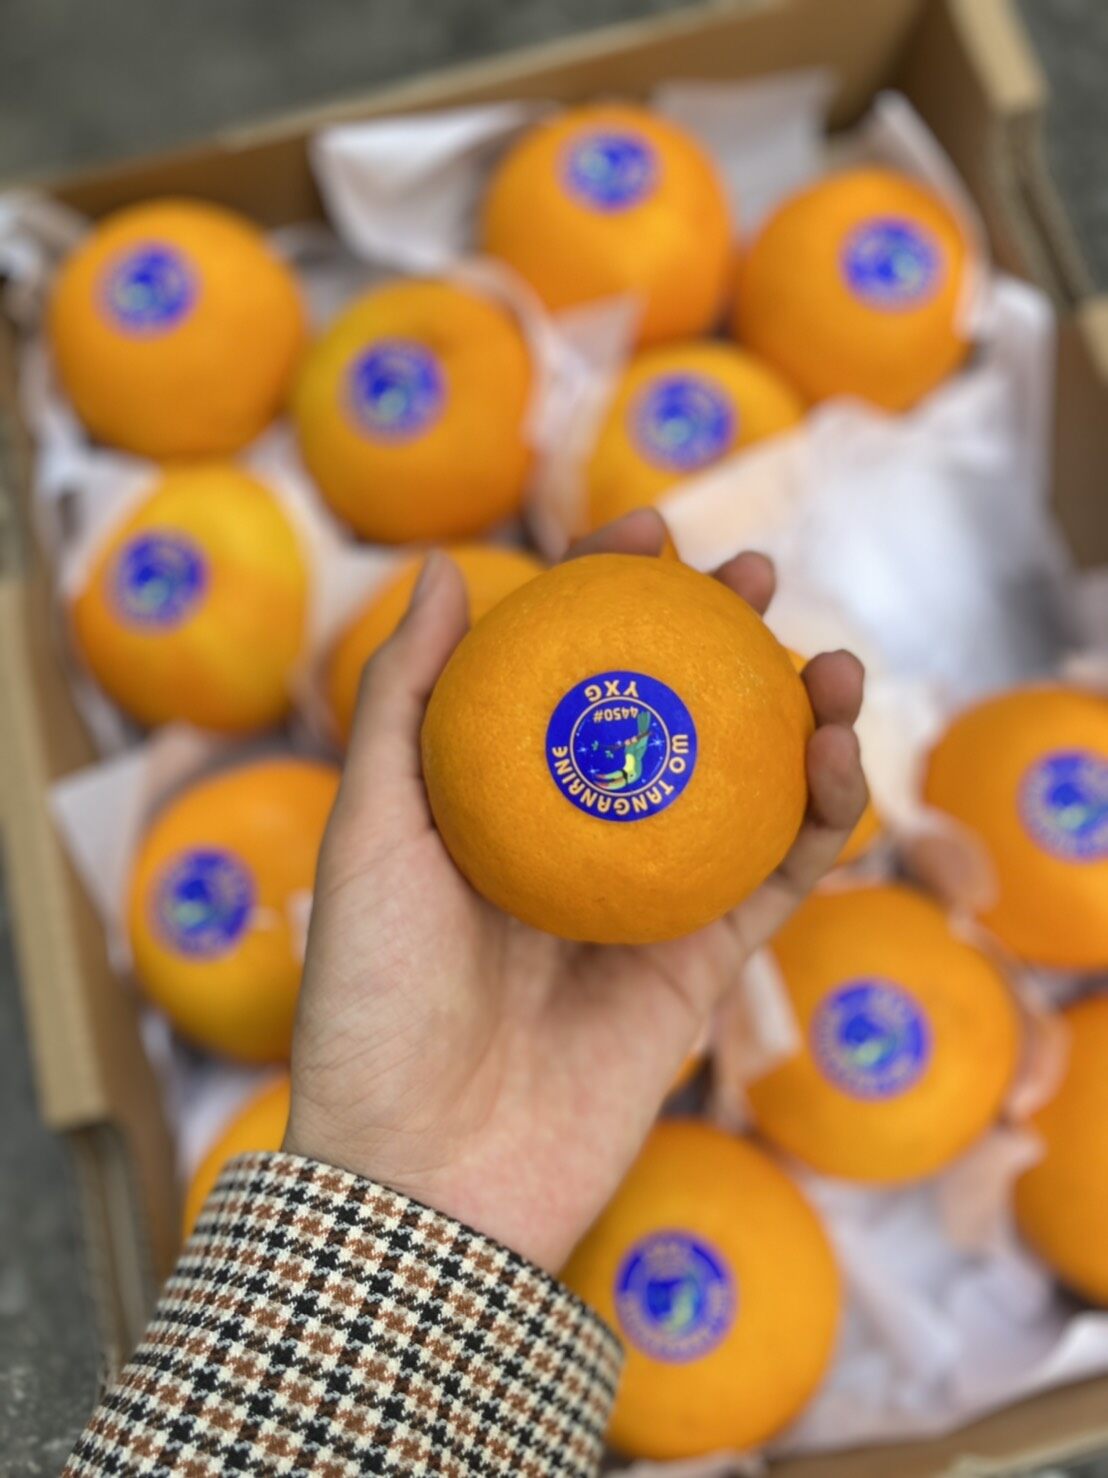 ส้มแมนดาริน ไต้หวัน Mandarin Orange (1แพค/ไซส์XL) (TAIWAN) ~ลดพิเศษ~ ผลไม้นำเข้า ส้มไต้หวัน ตรานกเงือก YXG ส้มนกแก้ว ส้มตรานกแก้ว HFT Wo Tangerine Wogan  ยี่ห้อ ตรานกแก้ว (5ลูก)